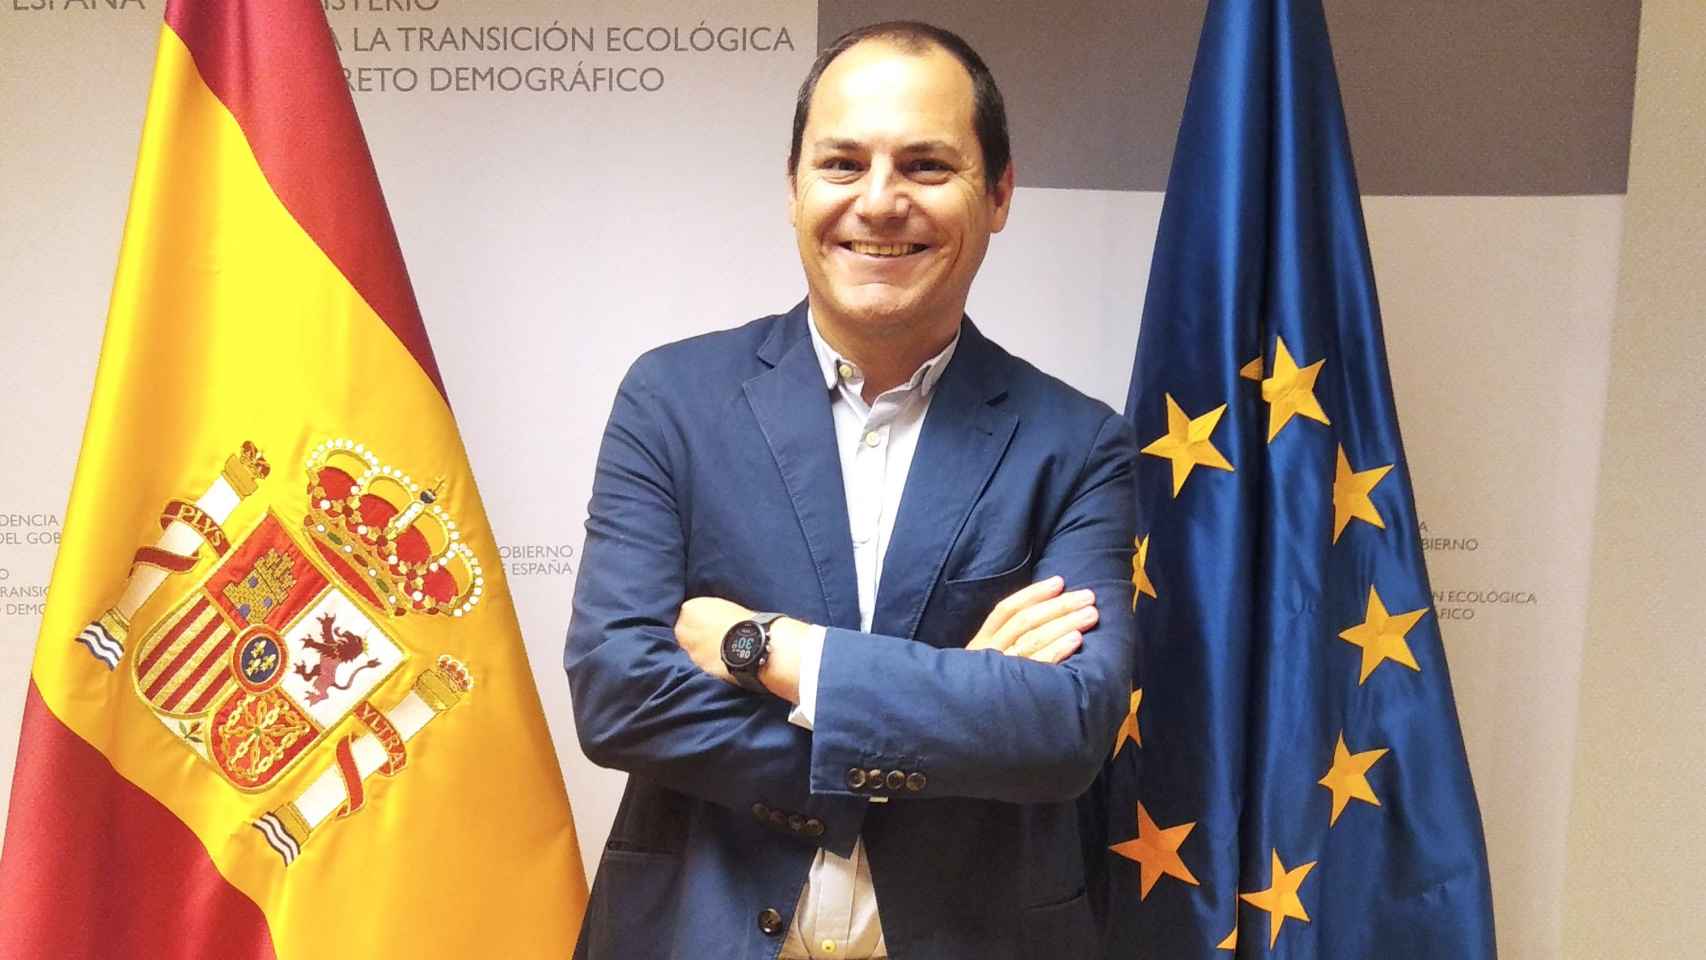 Jorge Luis Vega Valle, Subdirector General de Análisis, Planificación y Coordinación de Políticas contra la Despoblación de la Secretaría General para el Reto Demográfico.